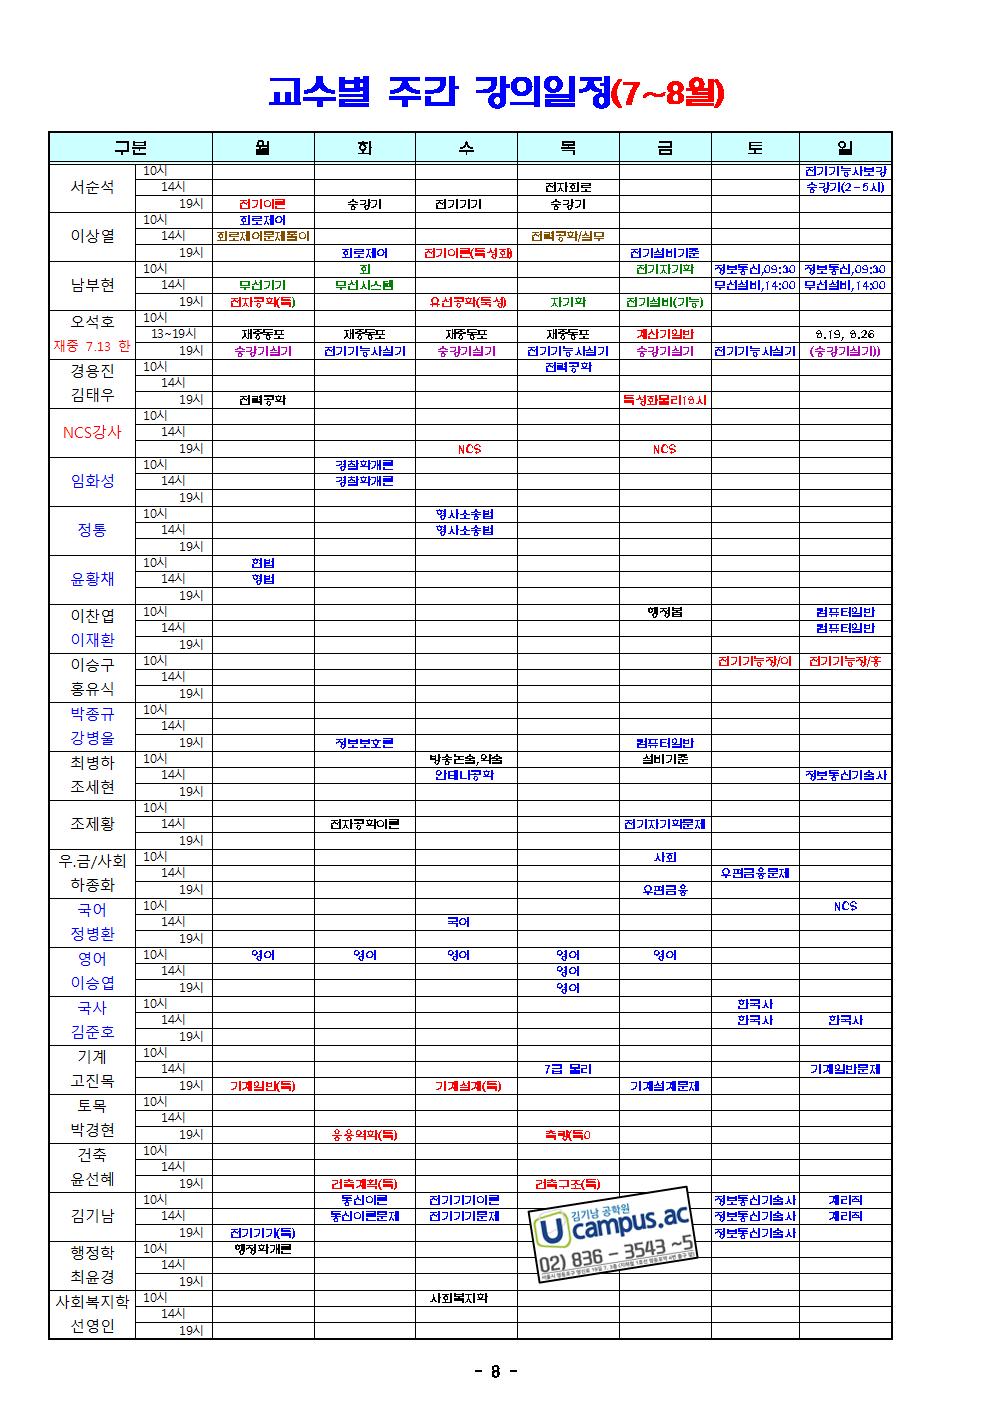 2018년 7월 8월 시간표 -최종 수정본(0625) (2)008.jpg